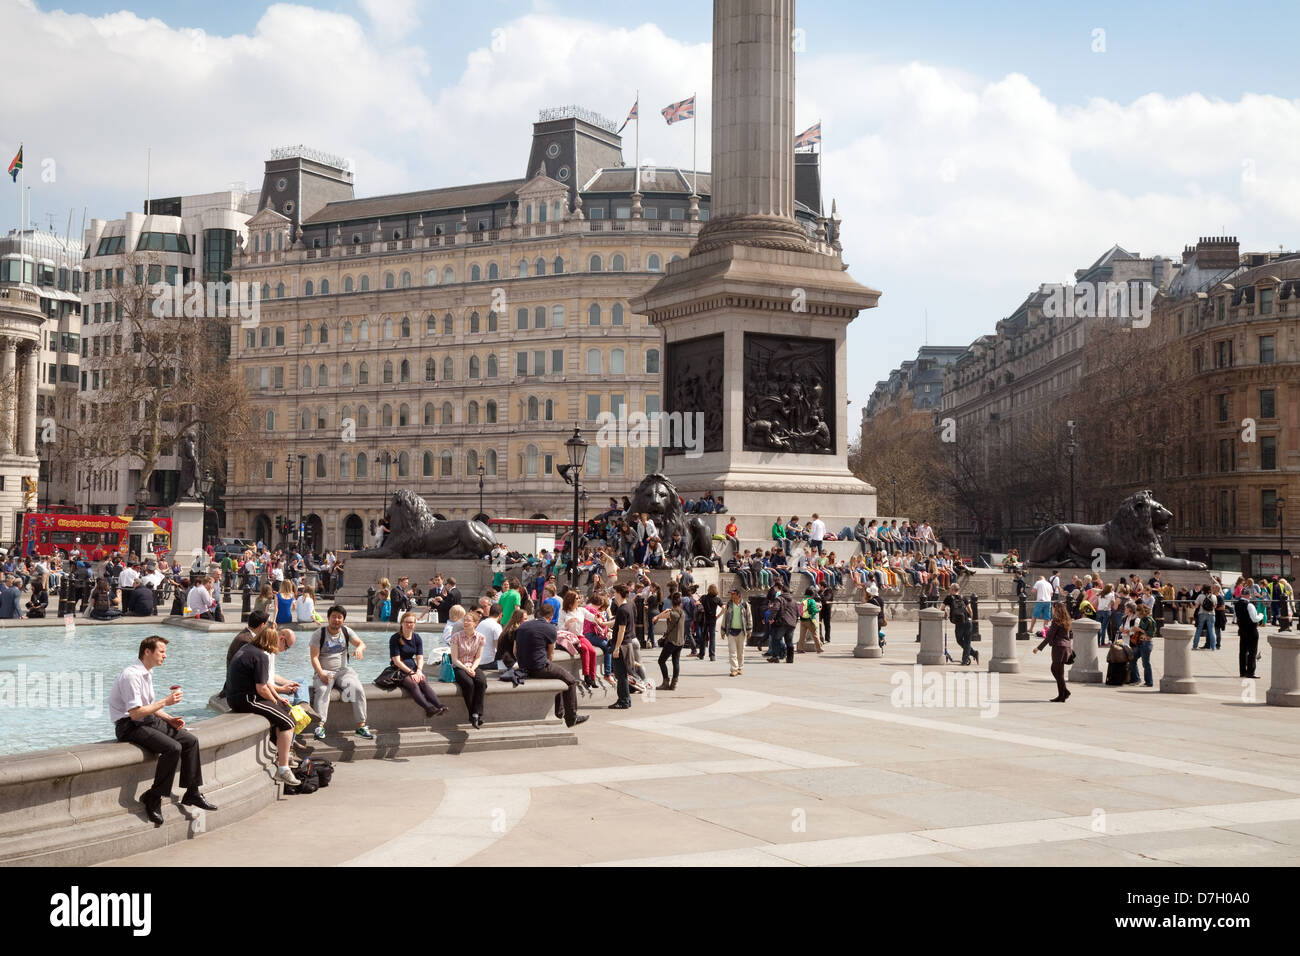 La gente seduta attorno alle fontane in una giornata di sole, Trafalgar Square, Central London WC2, Regno Unito Foto Stock